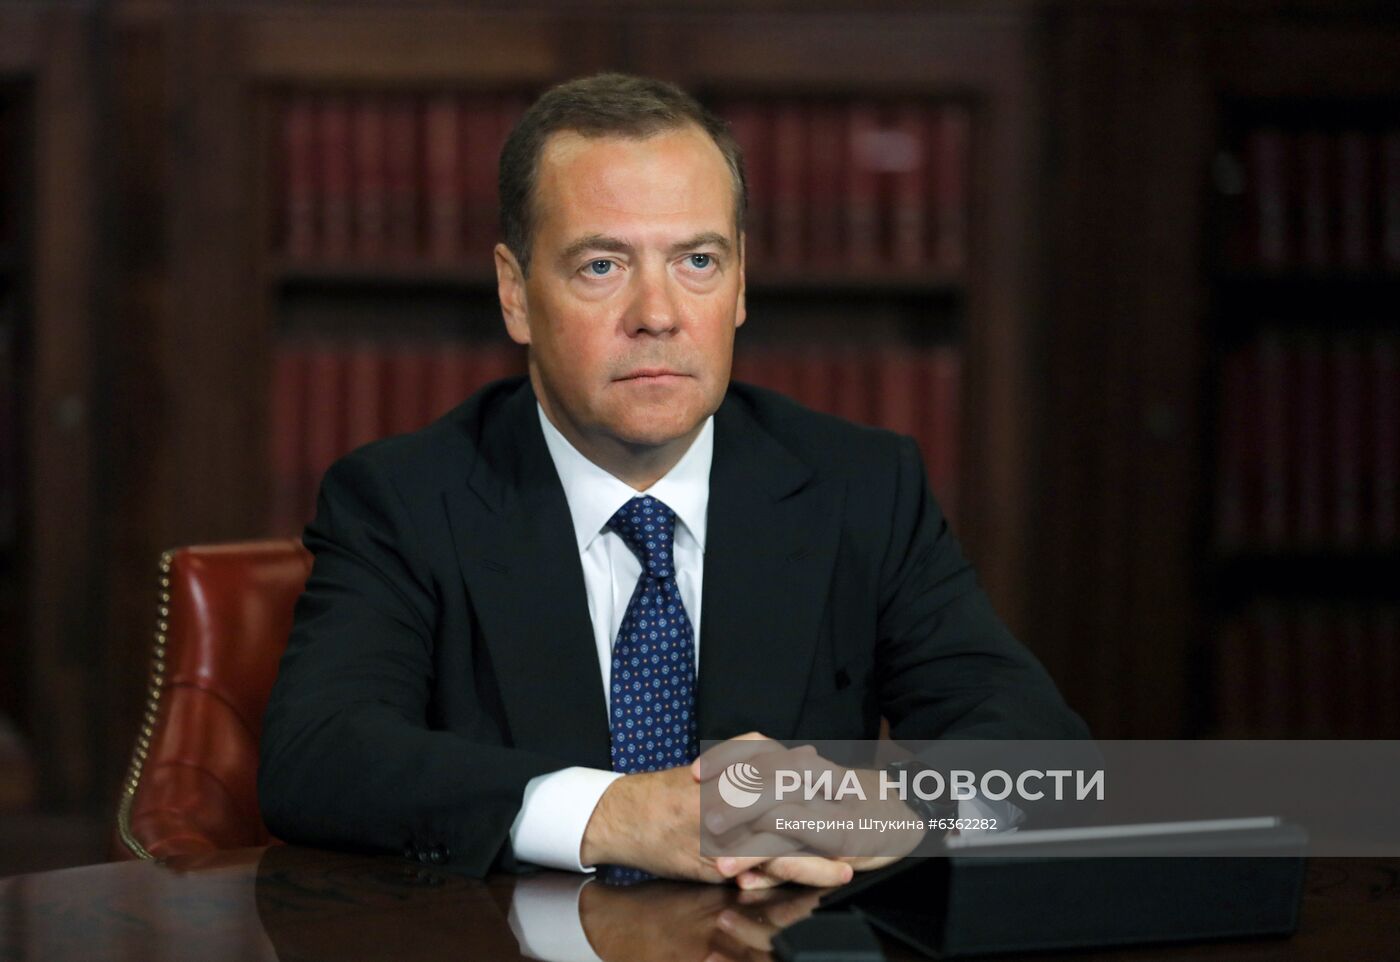 Заместитель председателя Совета безопасности РФ Д. Медведев выступил на пленарном заседании форума "Открытые инновации - 2020"